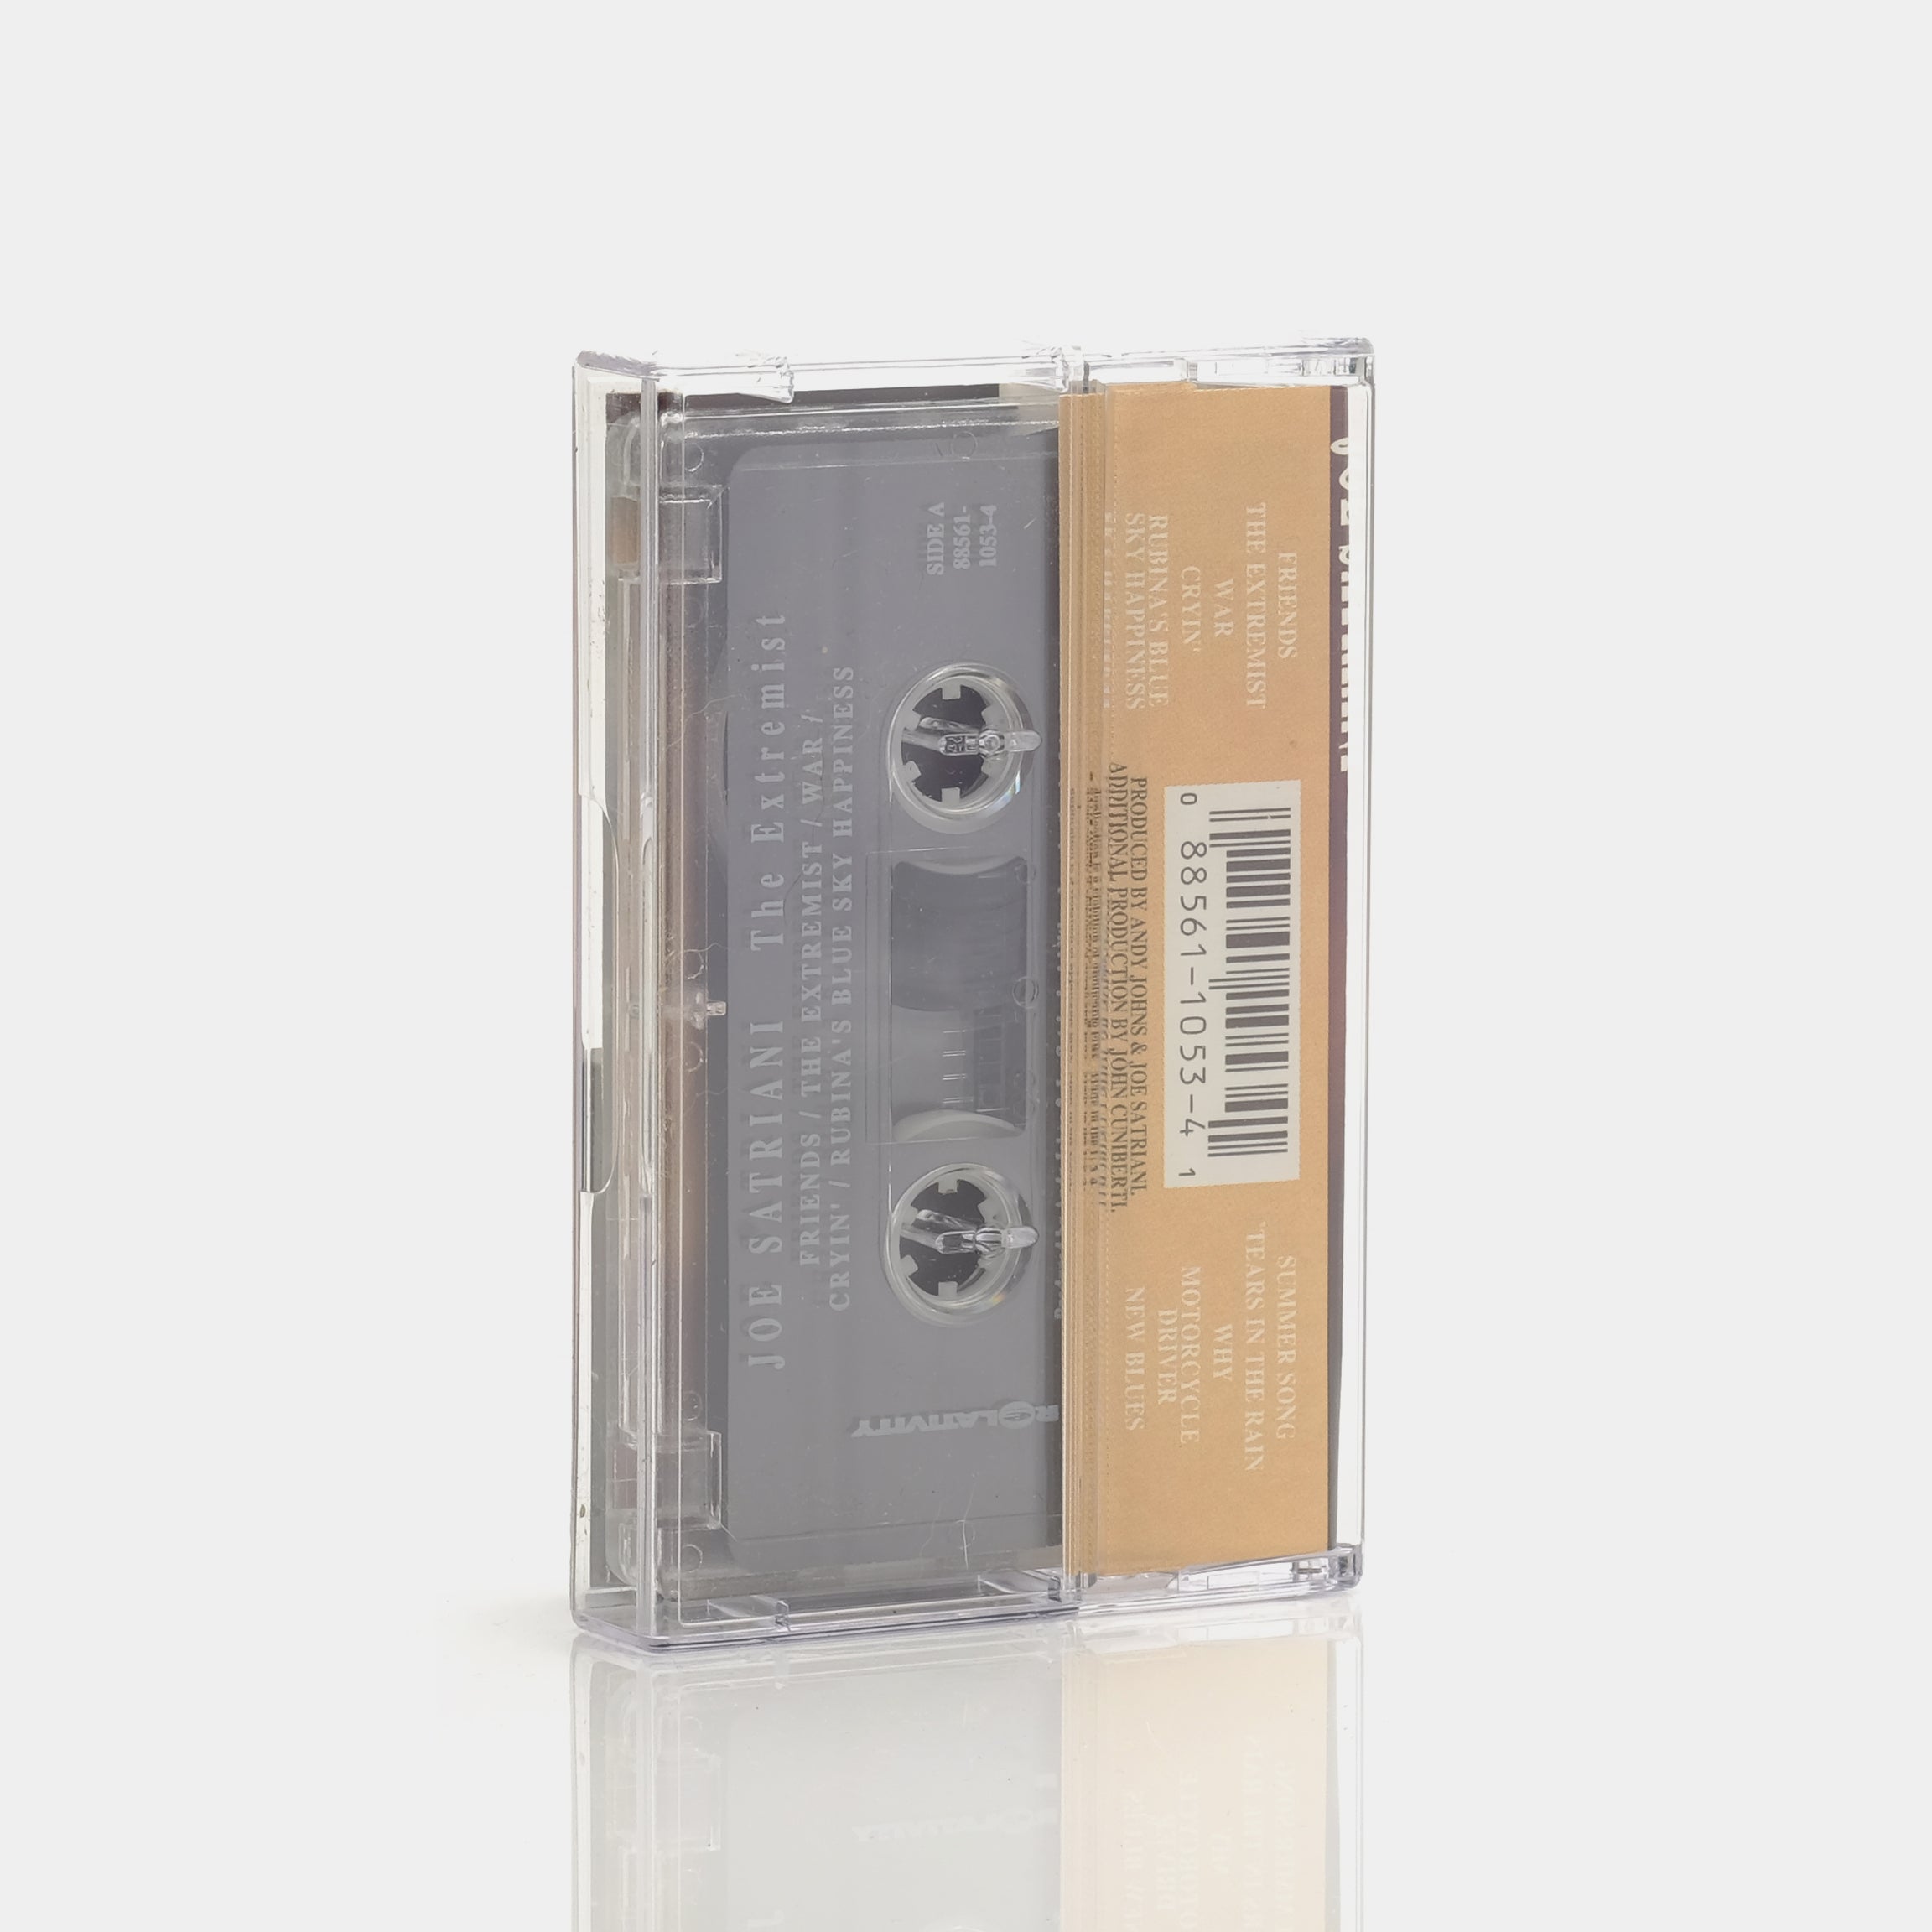 Joe Satriani - The Extremist Cassette Tape